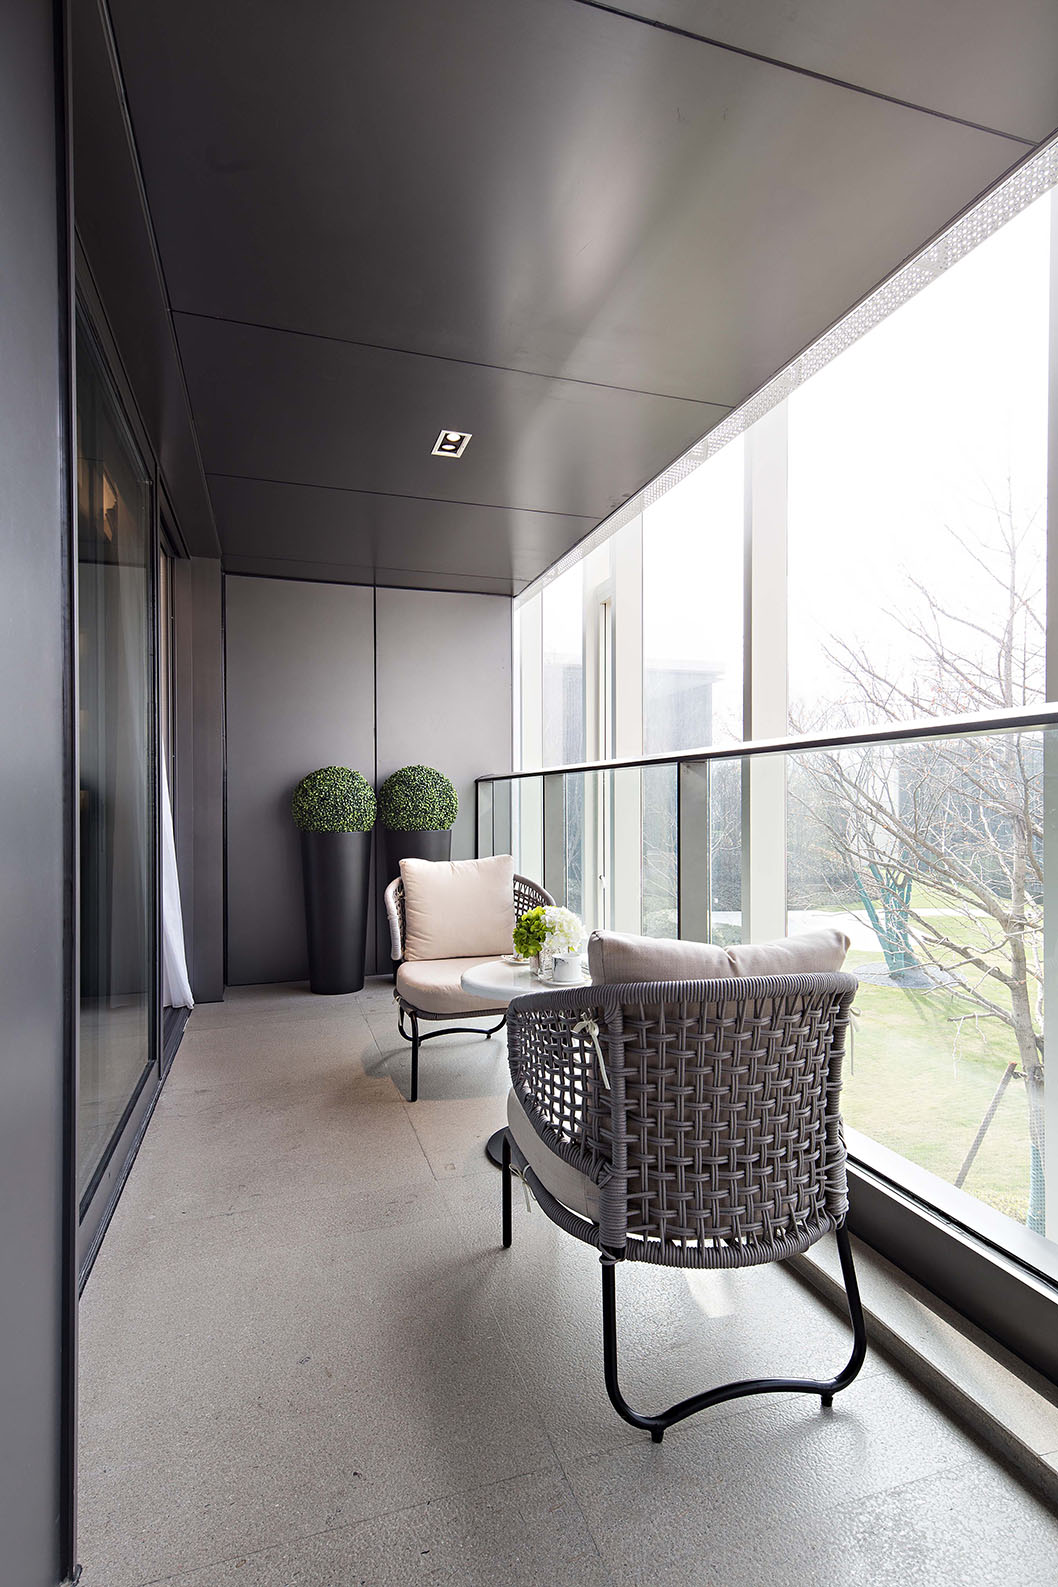 阳台空间通过休闲桌椅的陈设，让空间的休闲感更加强烈，提升了整个房屋的装修档次。